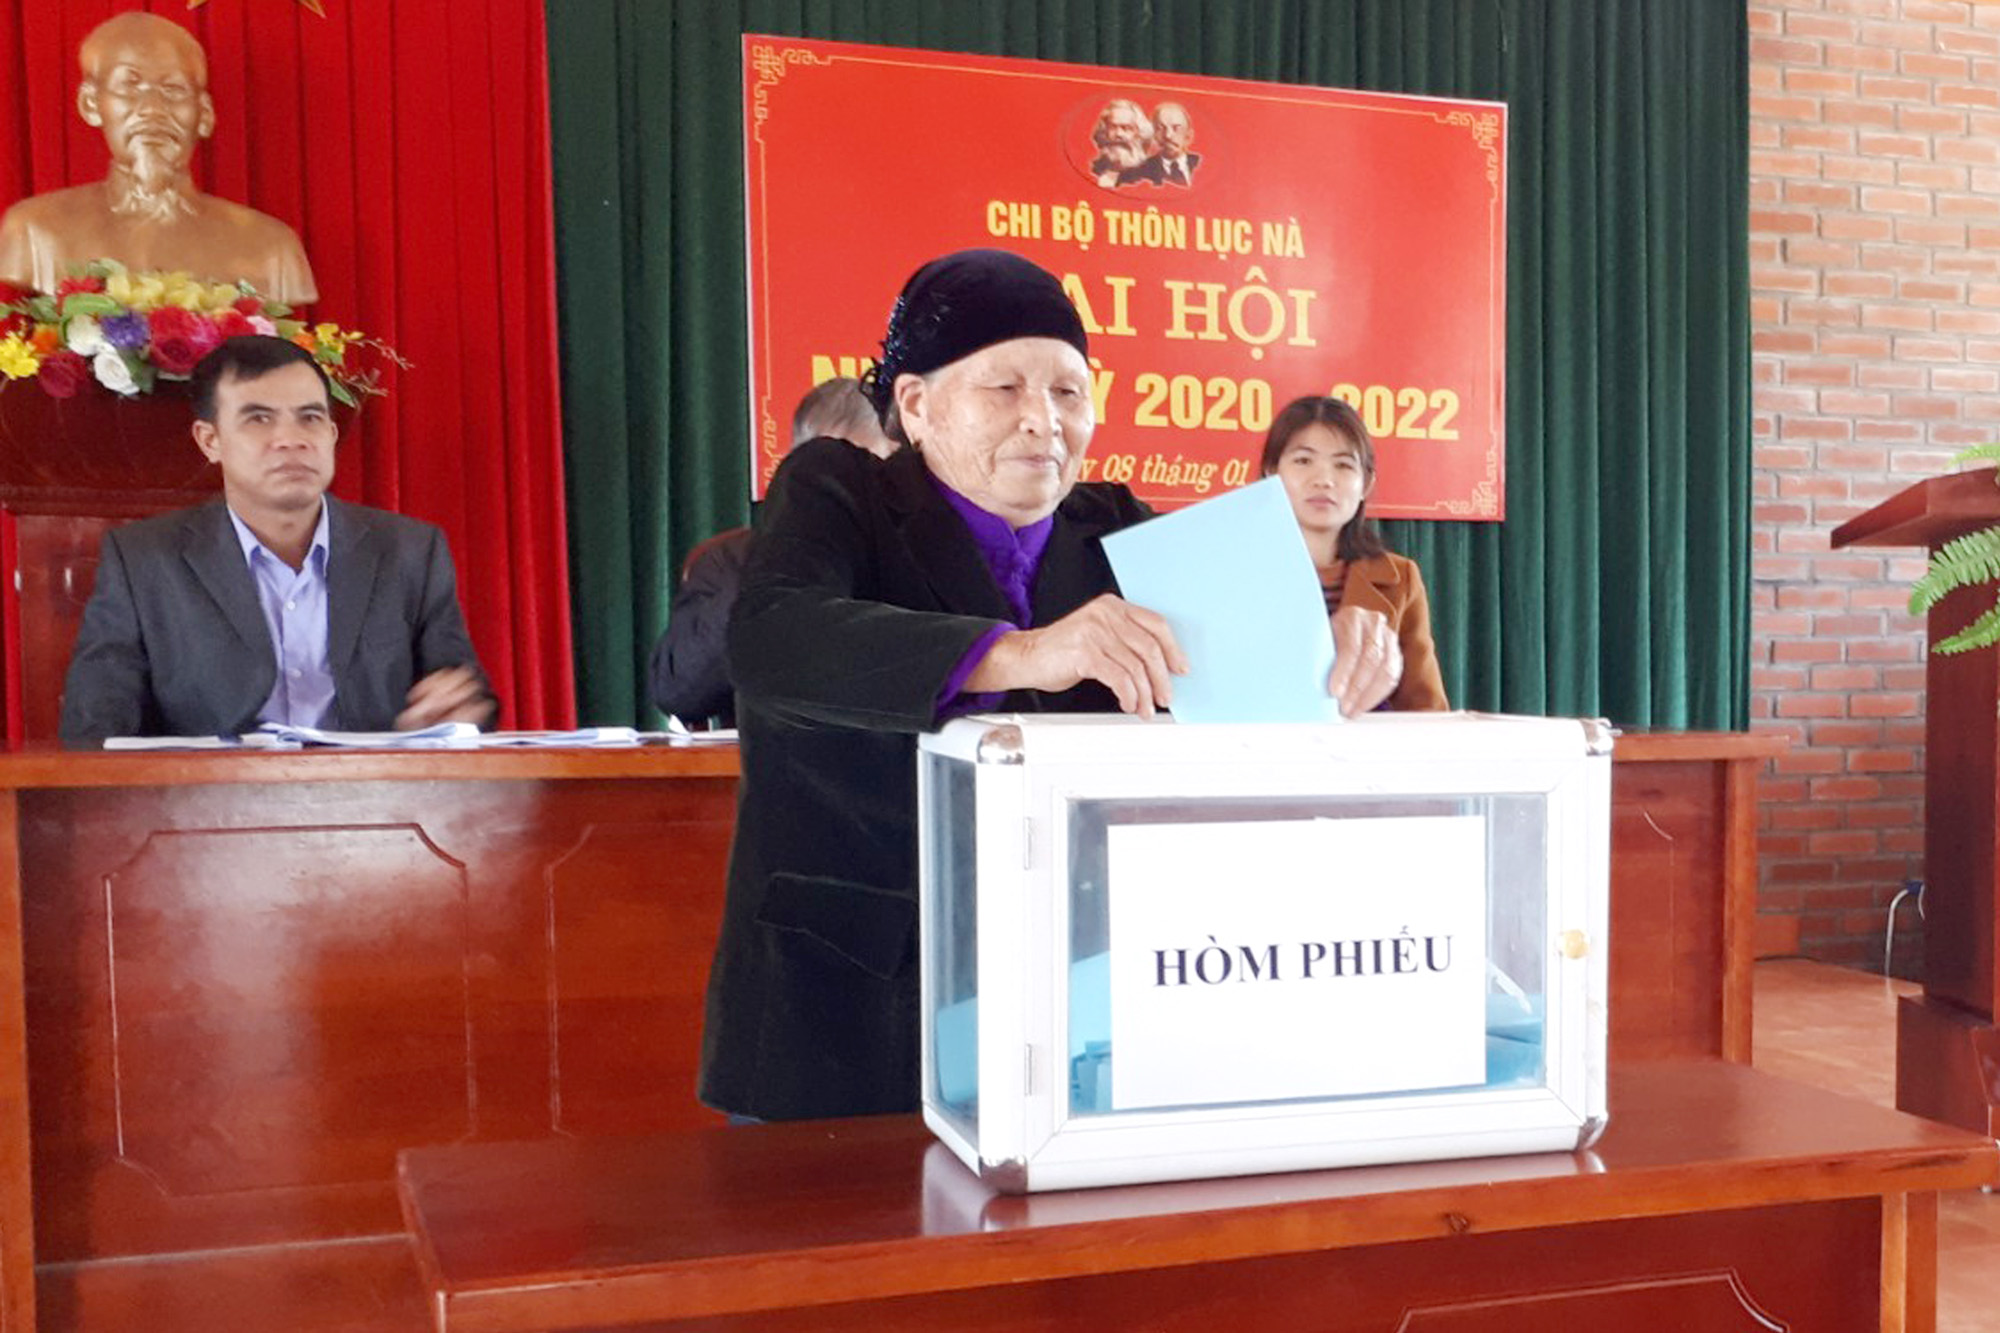 Các đại biểu bỏ phiếu bầu Bí thư chi bộ thôn Lục Nà (xã Lục Hồn, huyện Bình Liêu) ngay tại Đại hội chi bộ thôn nhiệm kỳ 2020-2022